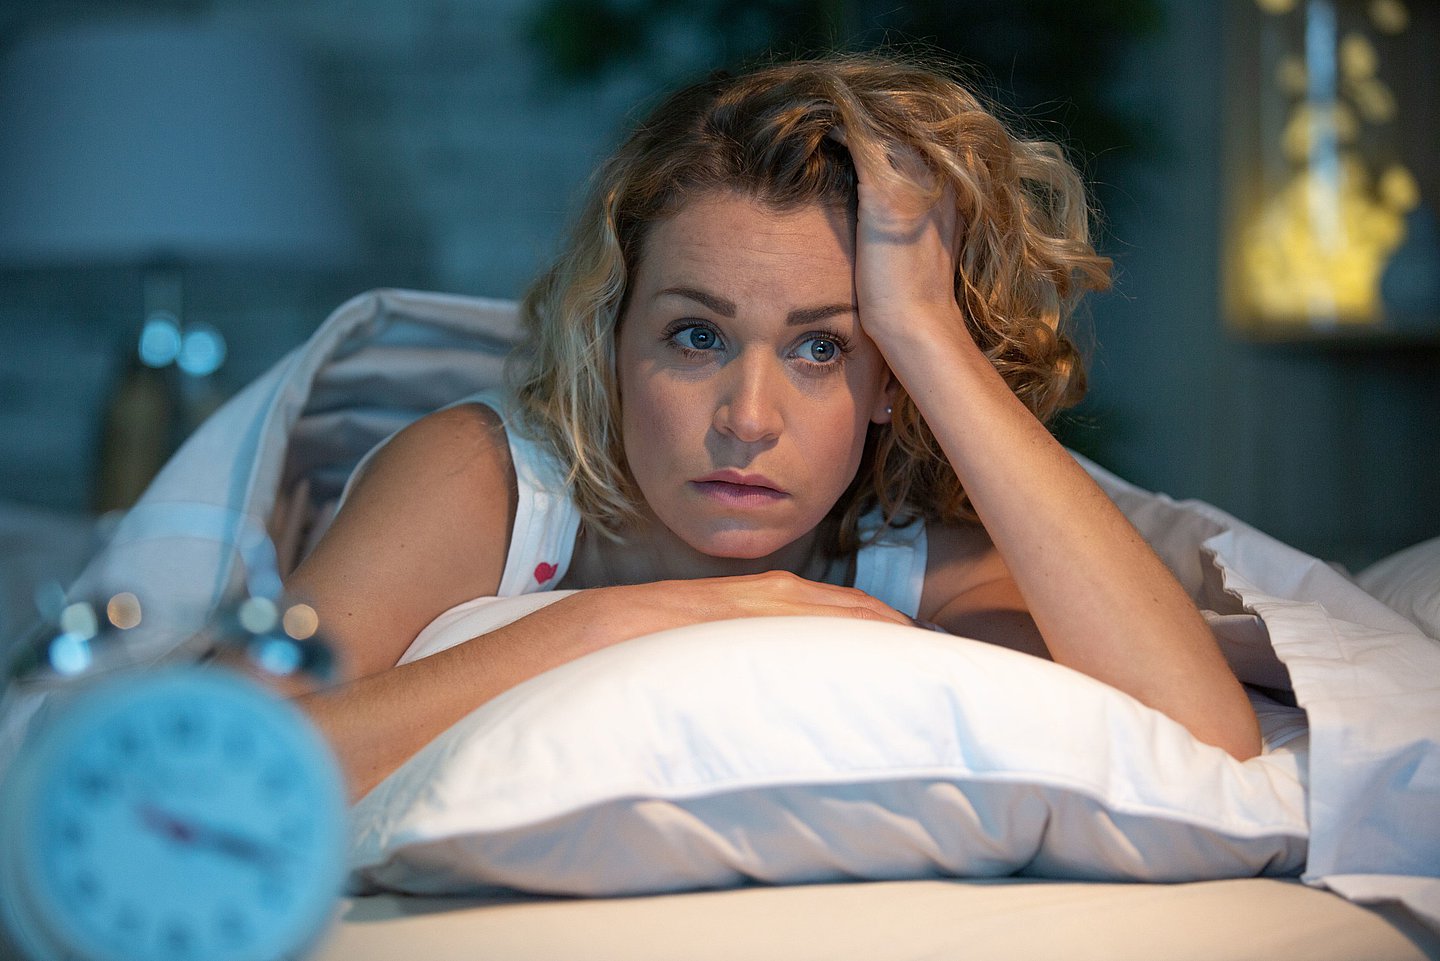 Foto zeigt eine Frau nachts in ihrem Bett liegend, die sich mit der linken Hand den Kopf auf ihrem Kopfkissen abstützt und etwas genervt schaut, weil sie nicht schlafen kann.